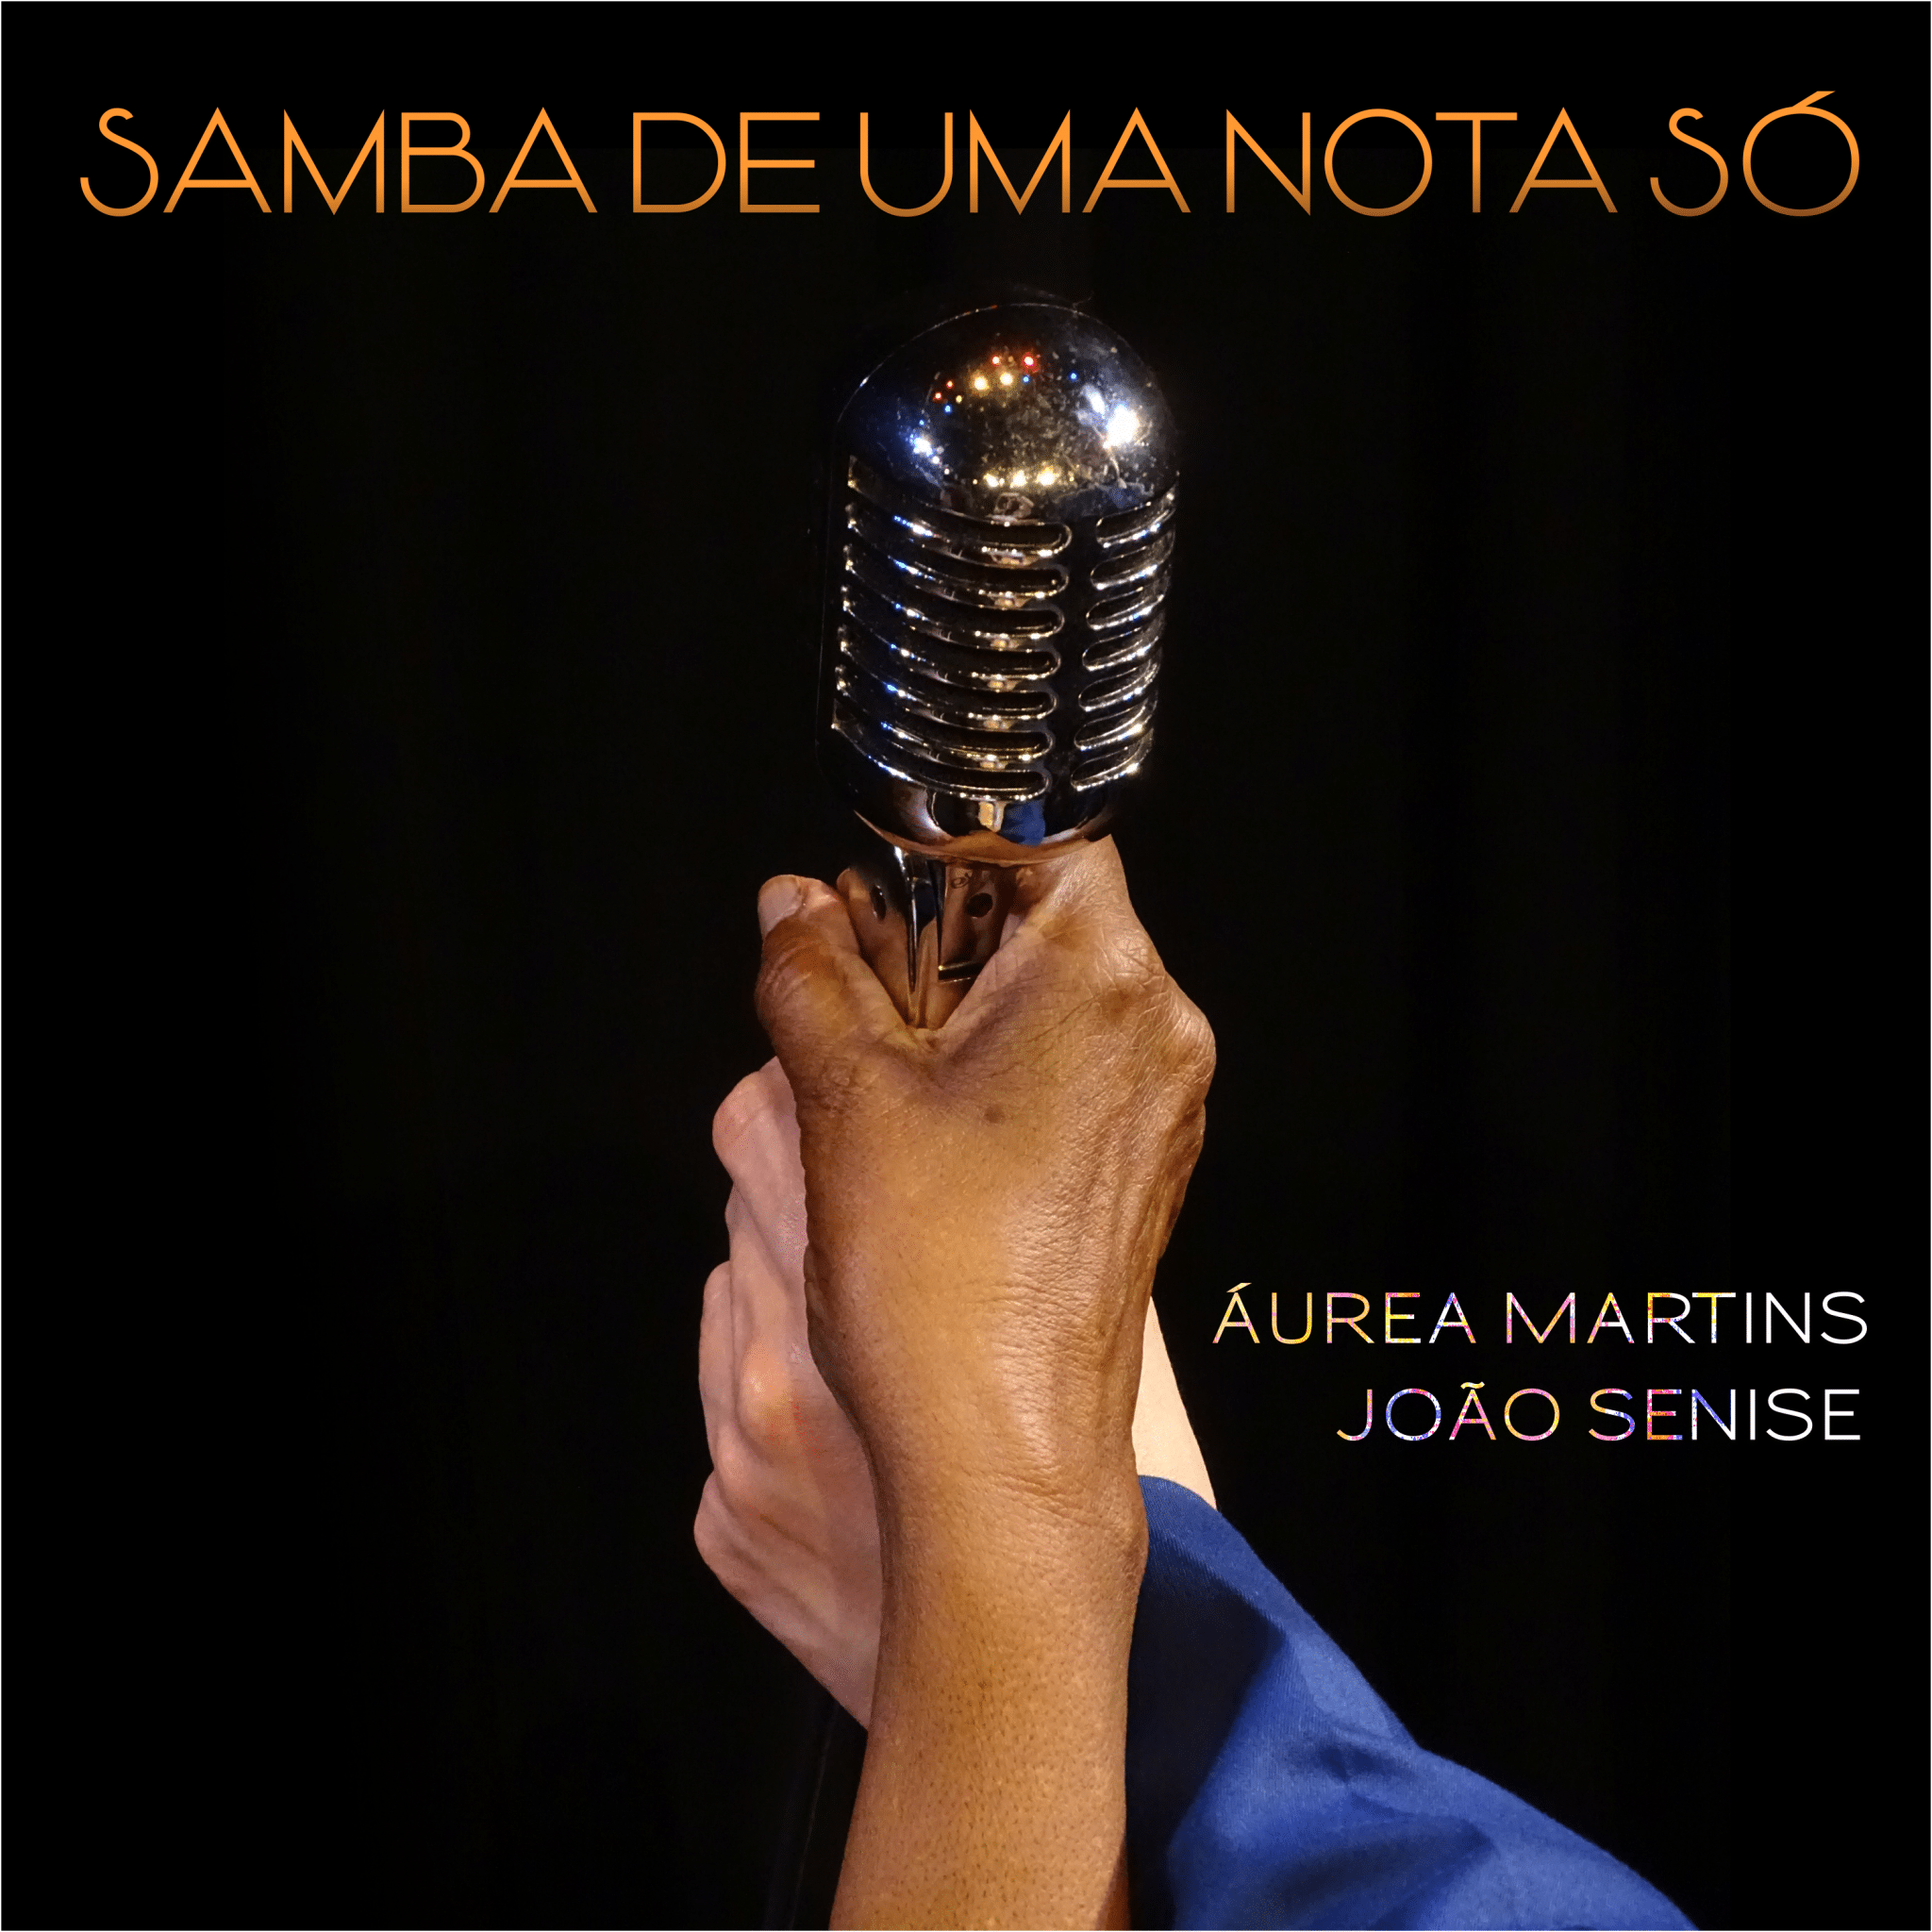 revistaprosaversoearte.com - Áurea Martins e João Senise lançam single 'Samba de uma nota só'